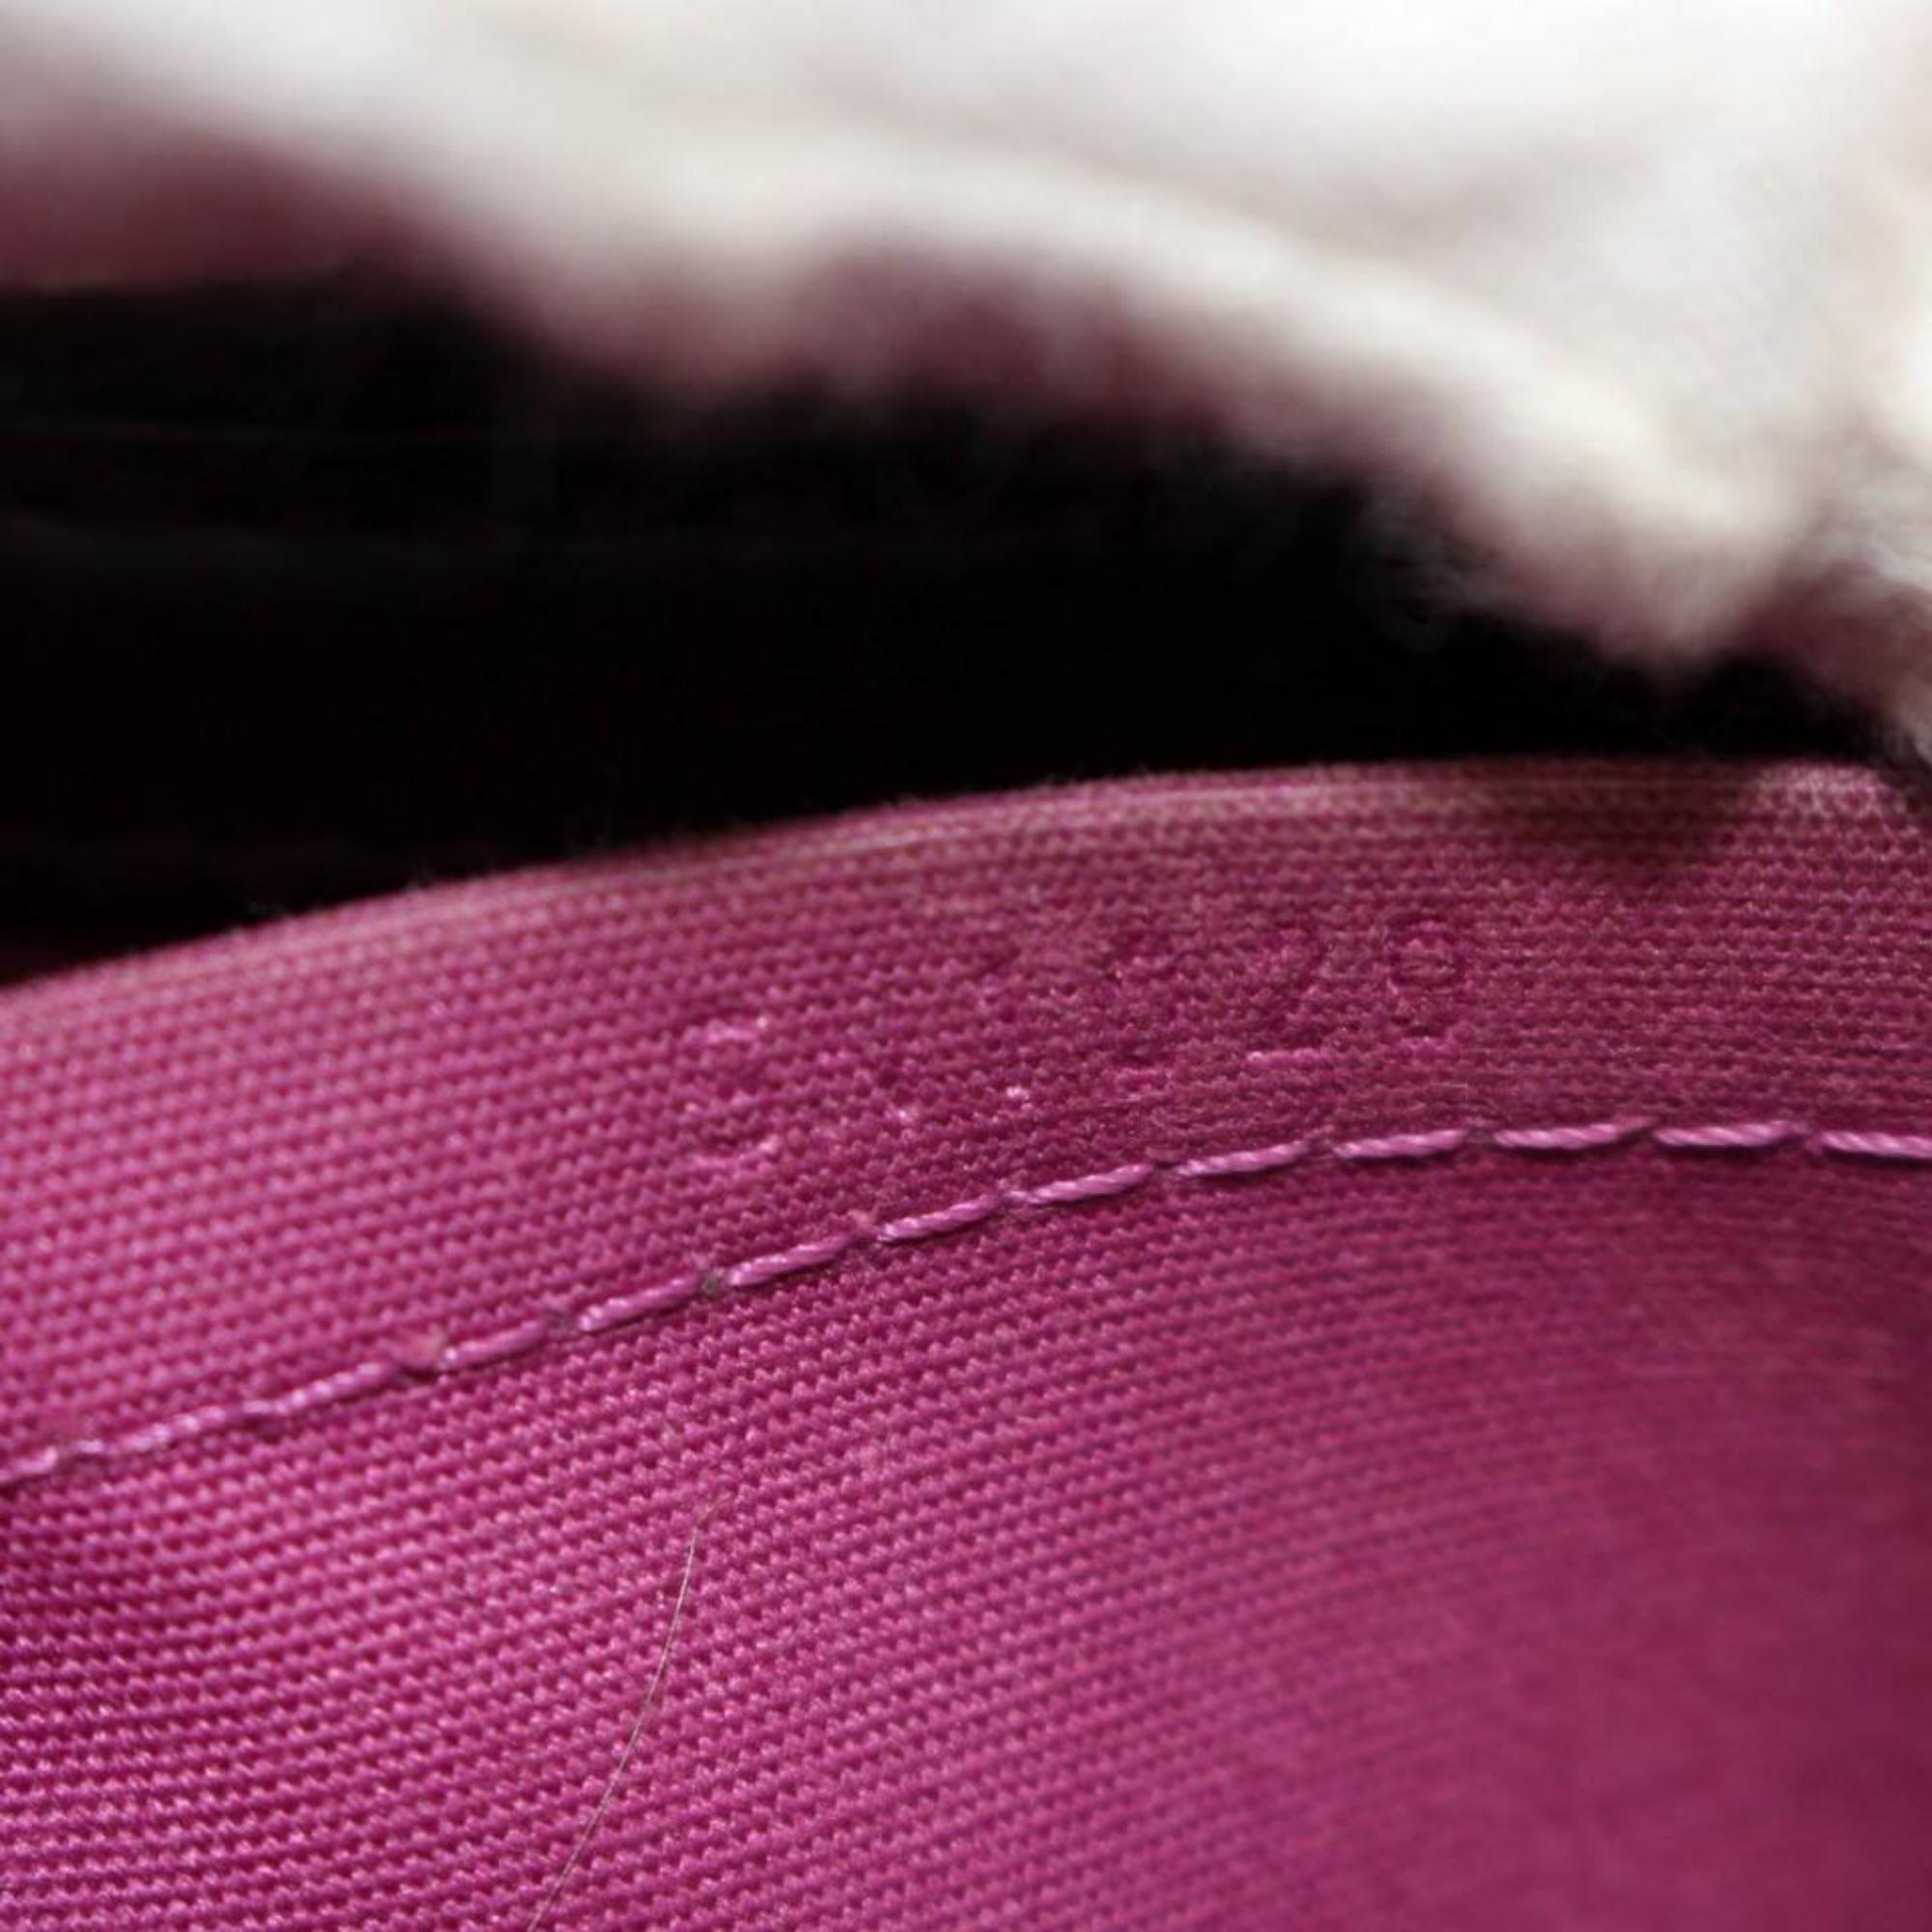 Black Louis Vuitton Passy Cassis Epi Pm 867138 Purple Leather Satchel For Sale